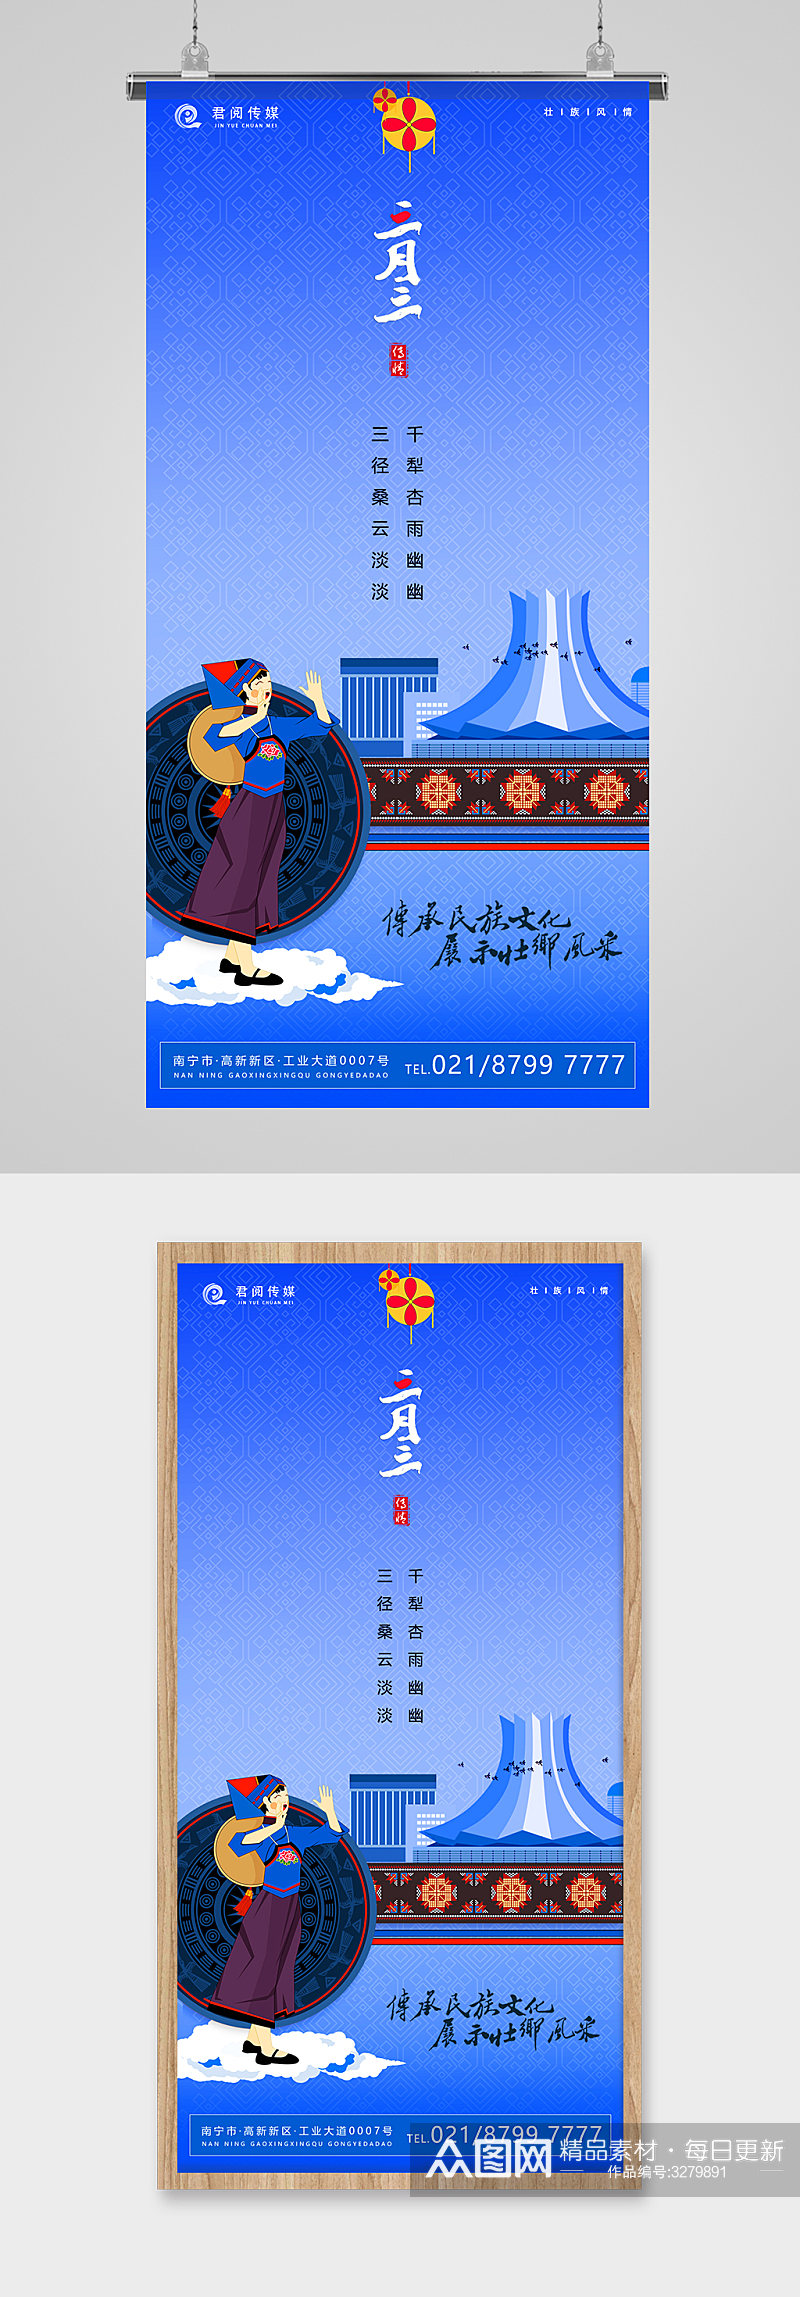 三月三上巳节壮乡文化宣传海报素材